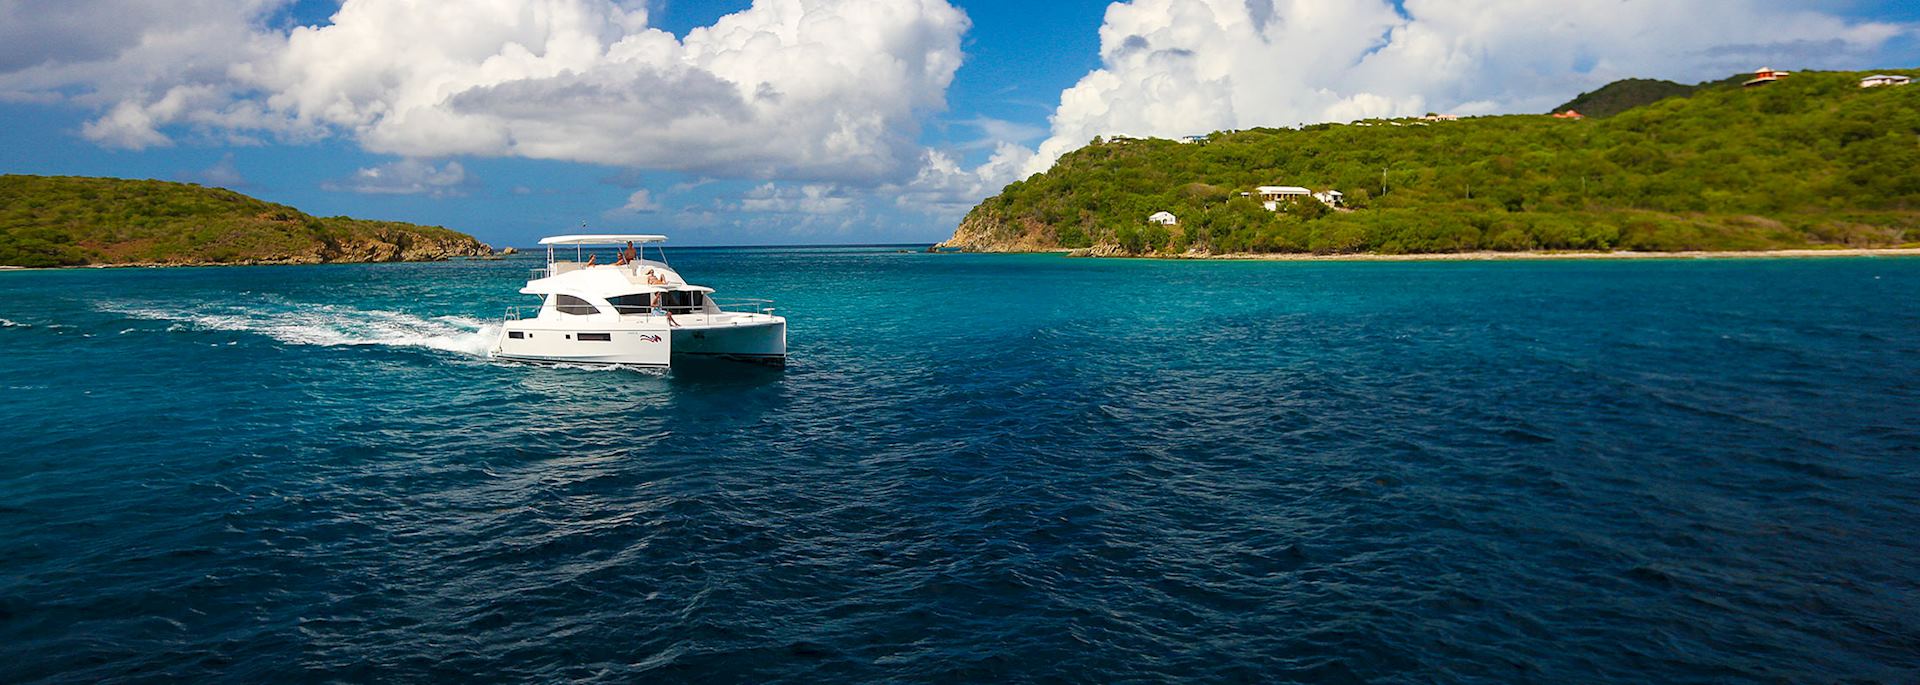 The Moorings 514 Power Catamaran, Grenada